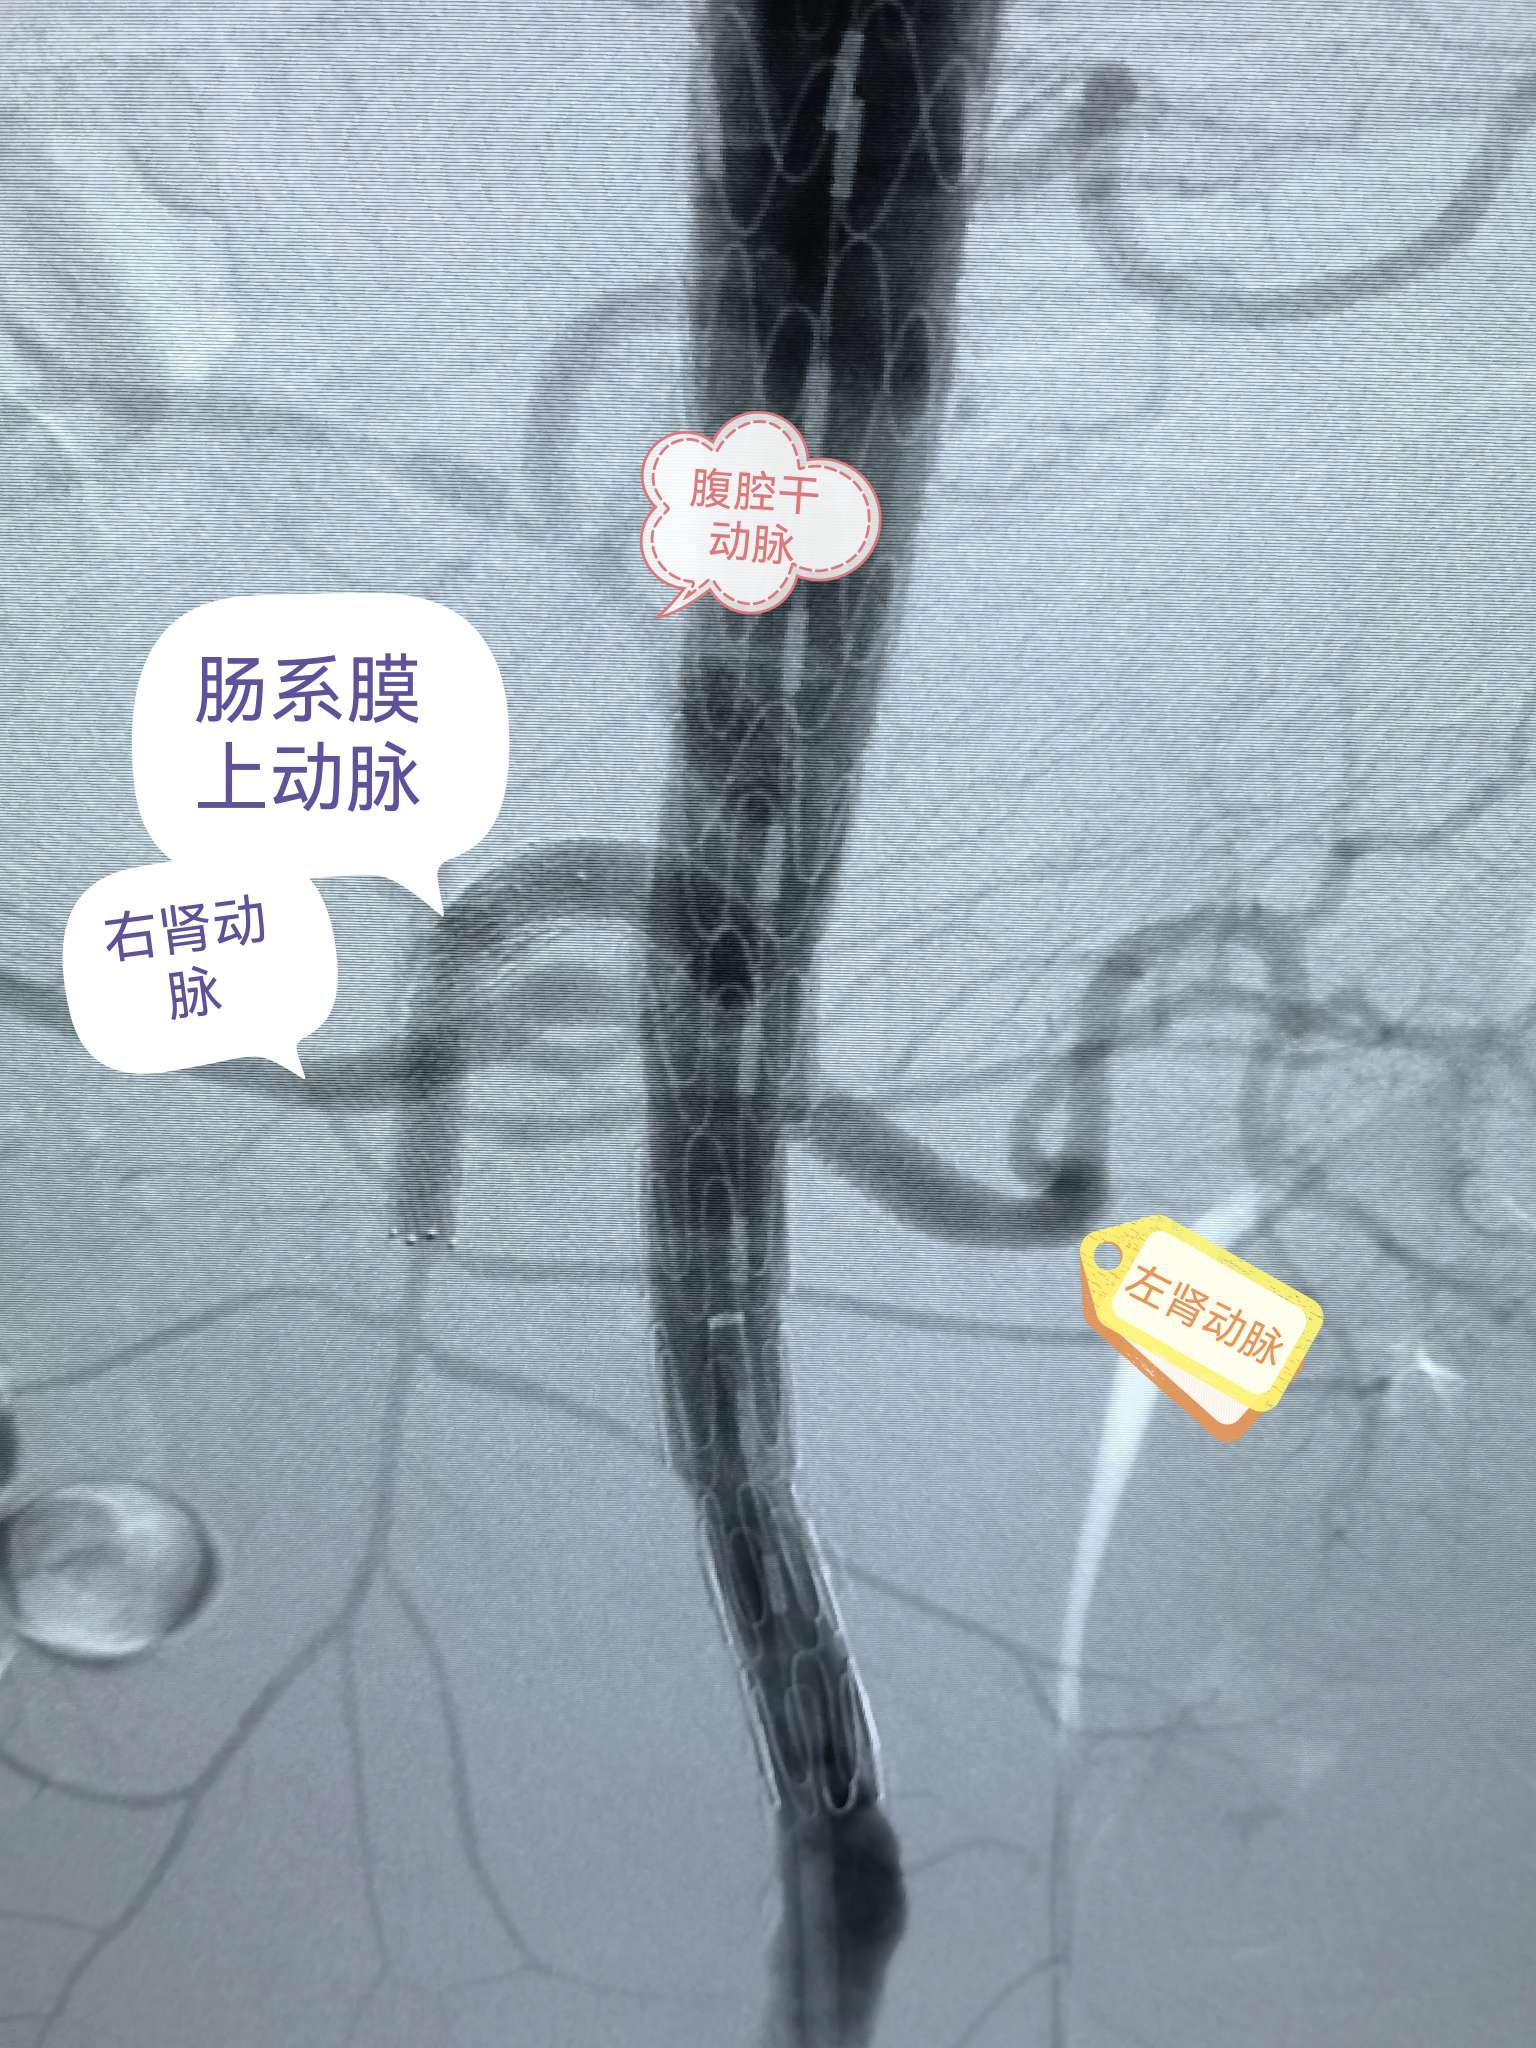 腹主动脉瘤开放手术__中国医疗